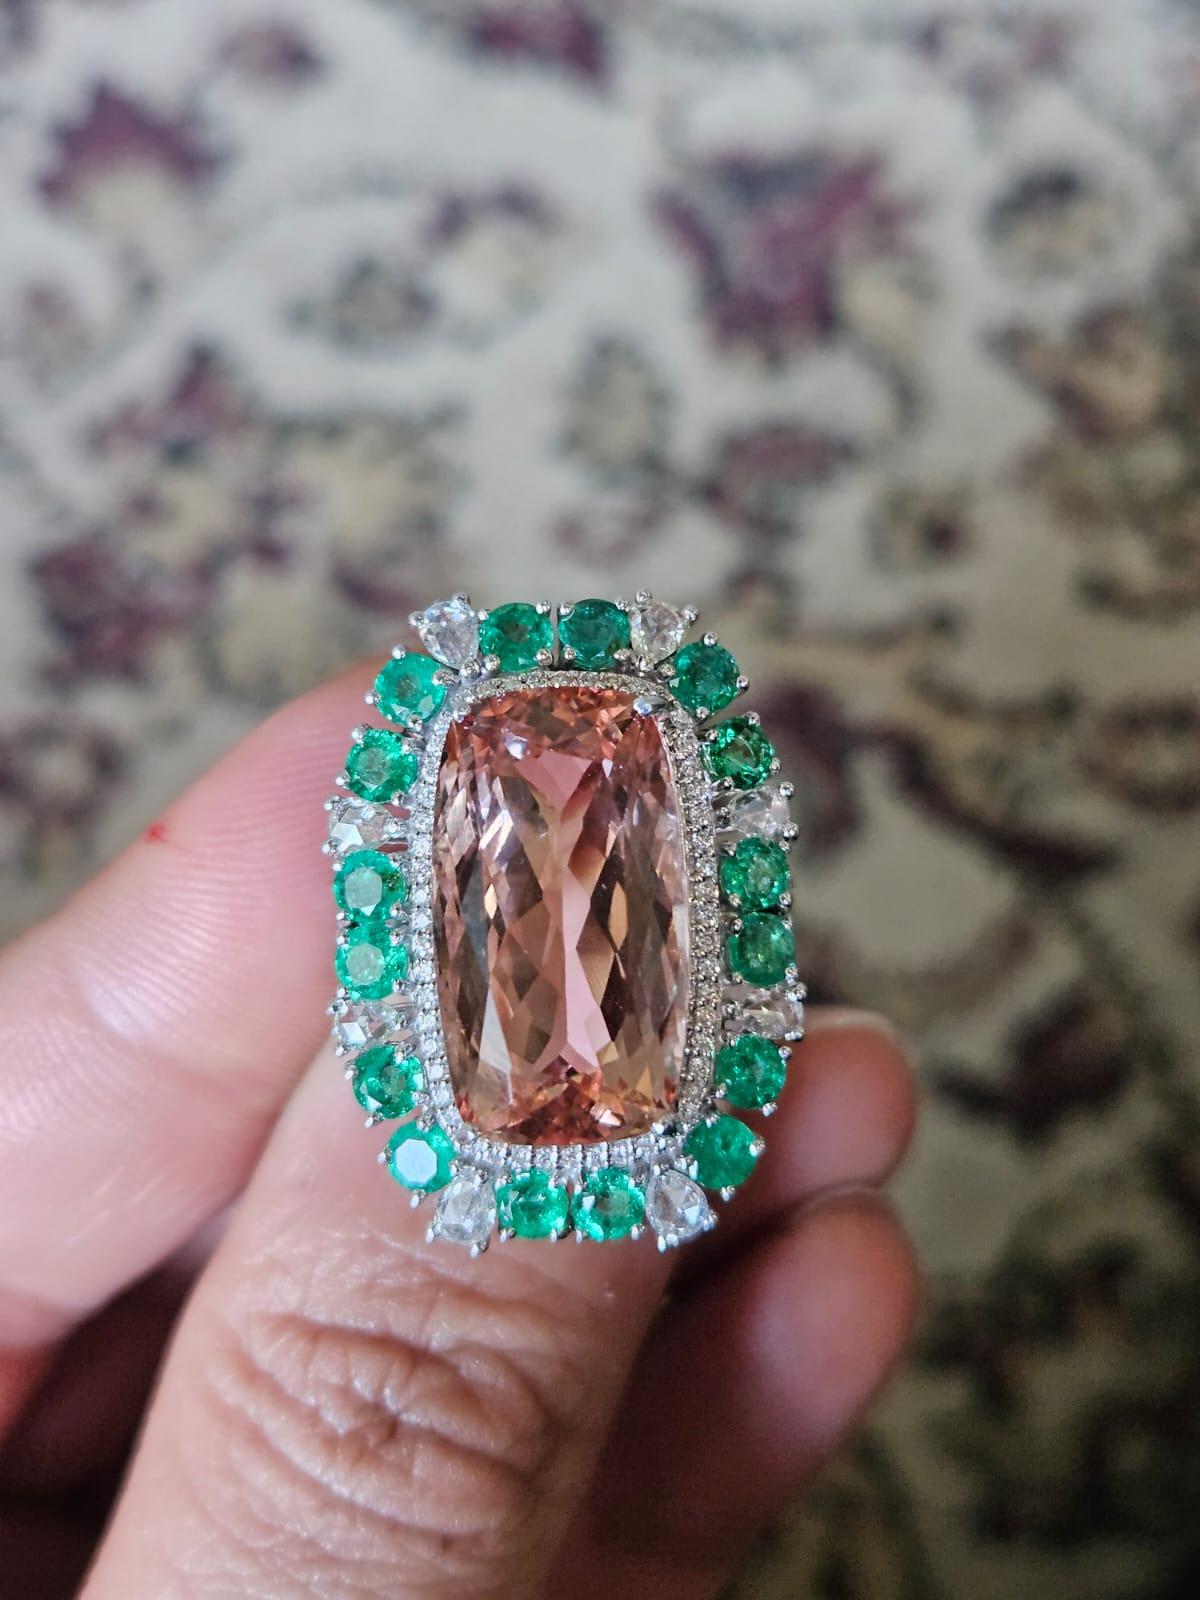 Eine sehr herrliche und schöne, Morganit & Smaragd Cocktail-Ring in 18K Gold & Diamanten gesetzt. Das Gewicht des Morganits beträgt 13.37 Karat. Das Gewicht der Smaragde beträgt 2,07 Karat. Die Smaragde sind völlig natürlich, ohne jegliche